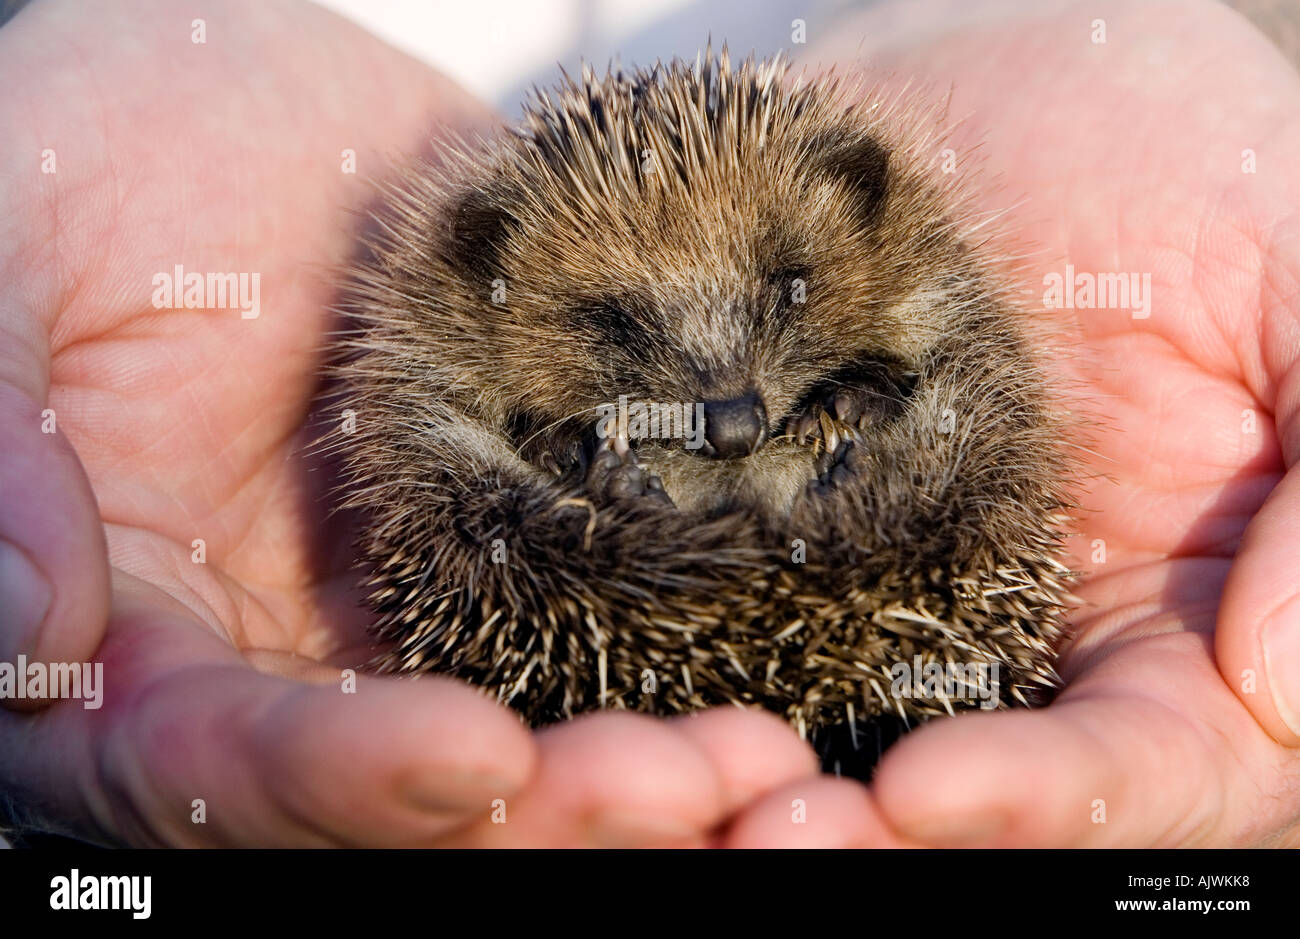 Erinaceus europaeus. Young Hedgehog asleep cradled in hands in morning sunlight Stock Photo